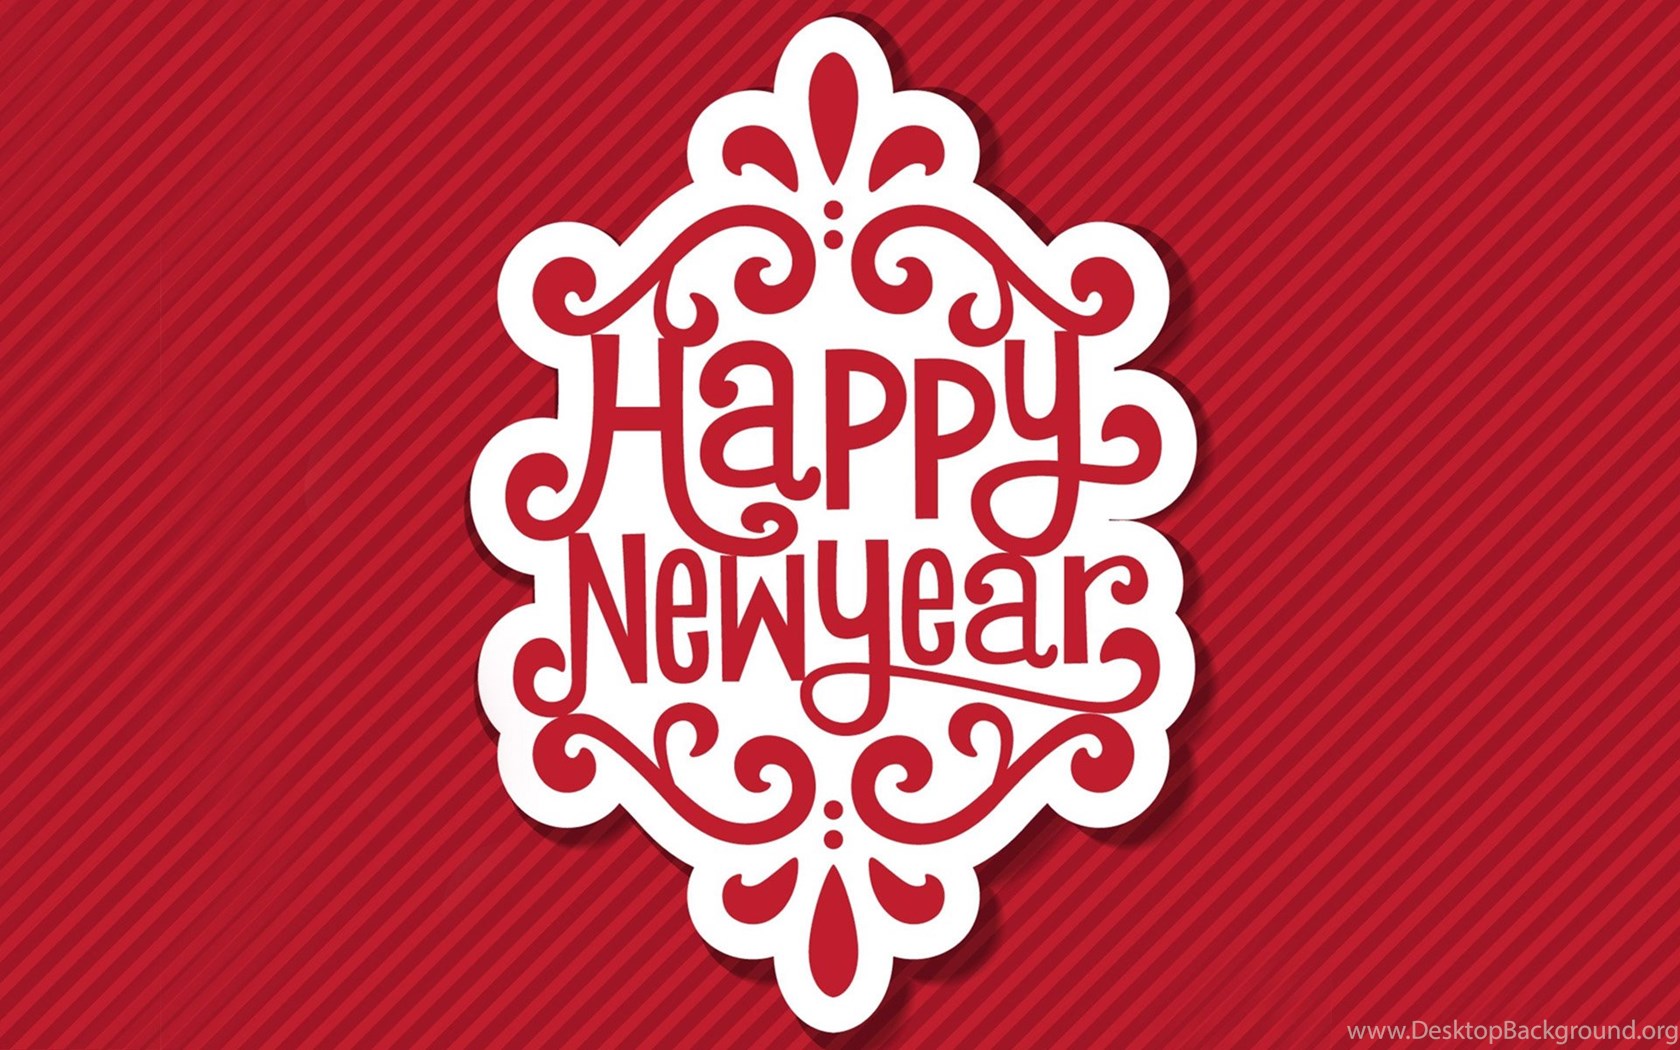 Happy new one. Happy New year. С новым годом logo. Хэппи Нью еар. С новым годом надпись вектор.